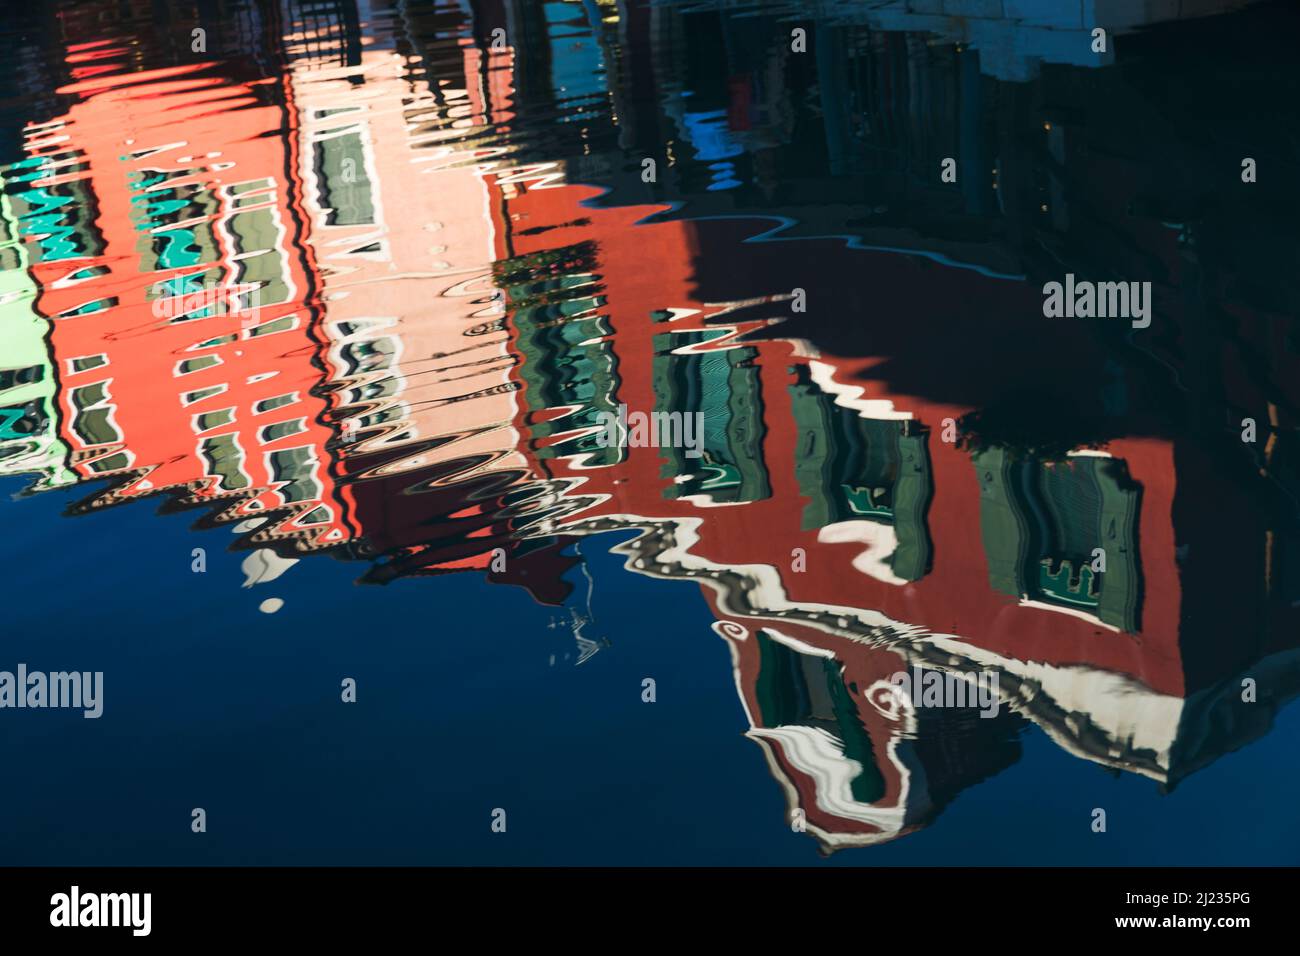 aly, Venedig, farbenfrohe Häuser auf der venezianischen Insel Burano, die sich zu einem Kanal spiegeln Stockfoto